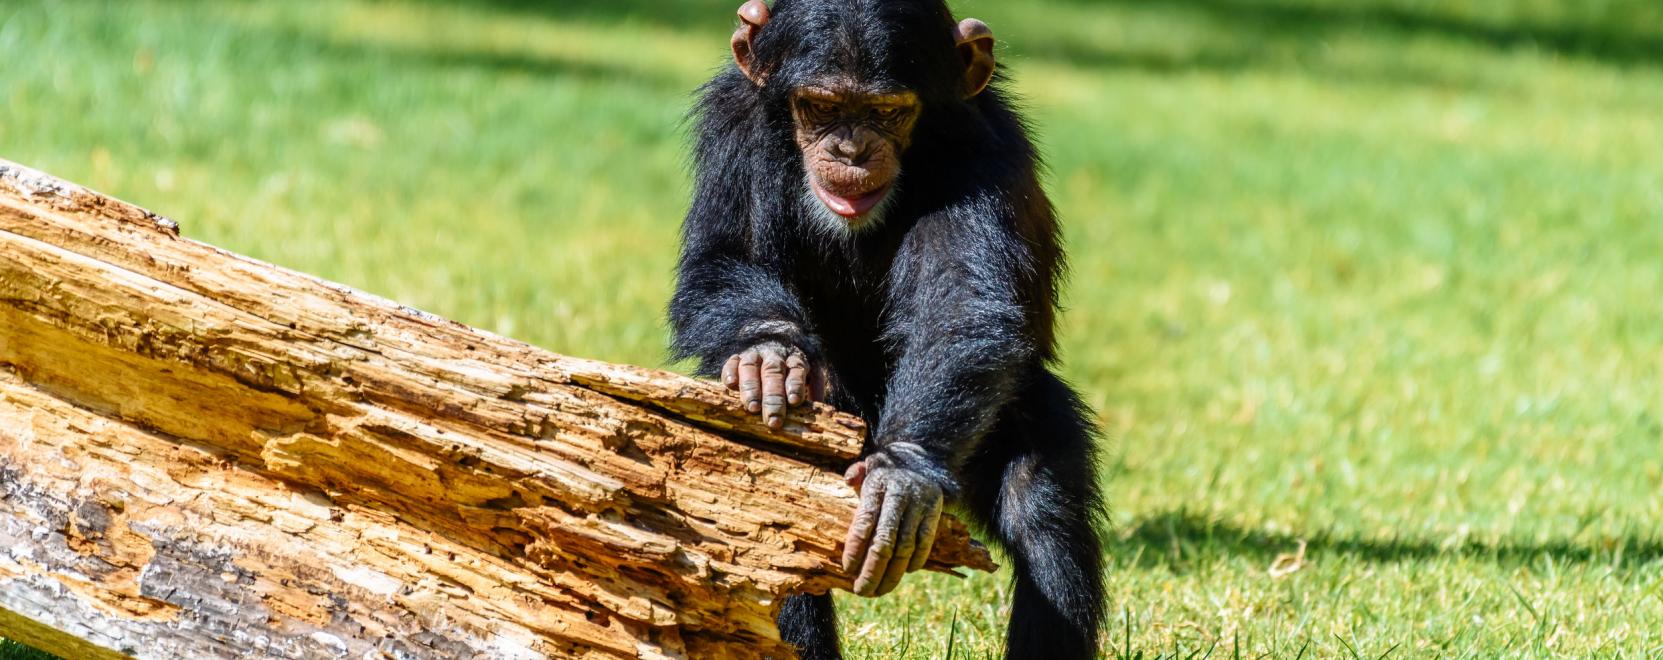 Arcfelismeréssel küzdenek a csimpánzok kereskedelme ellen